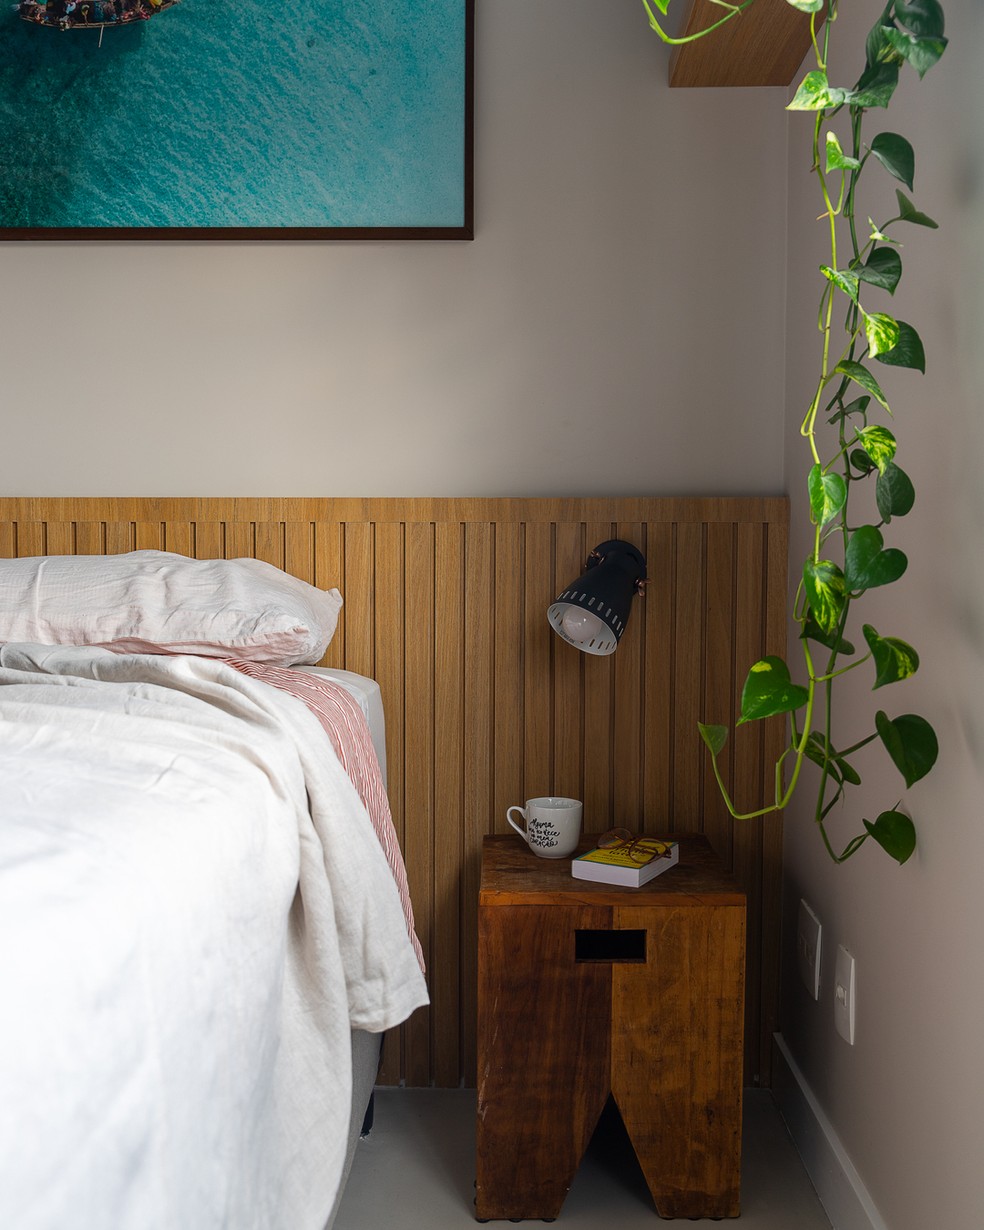 Madeira e cores claras criam um clima relaxante neste quarto assinado por Luize Matera — Foto: Daniel Magari